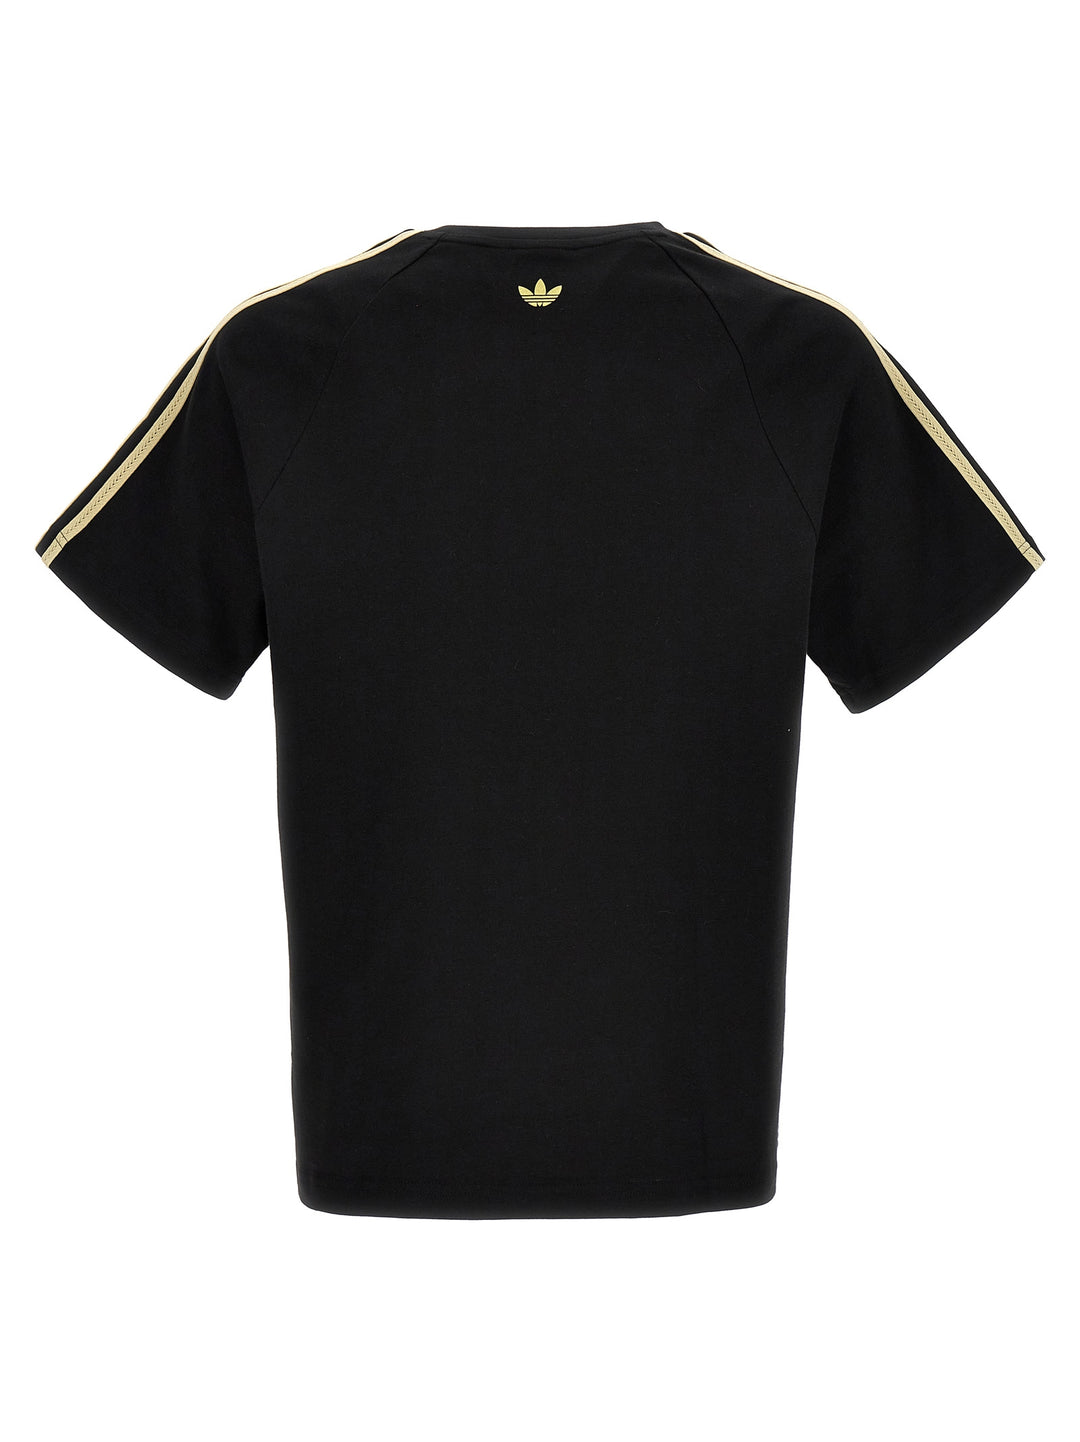 Adidas Originals X Wales Bonner T Shirt Nero